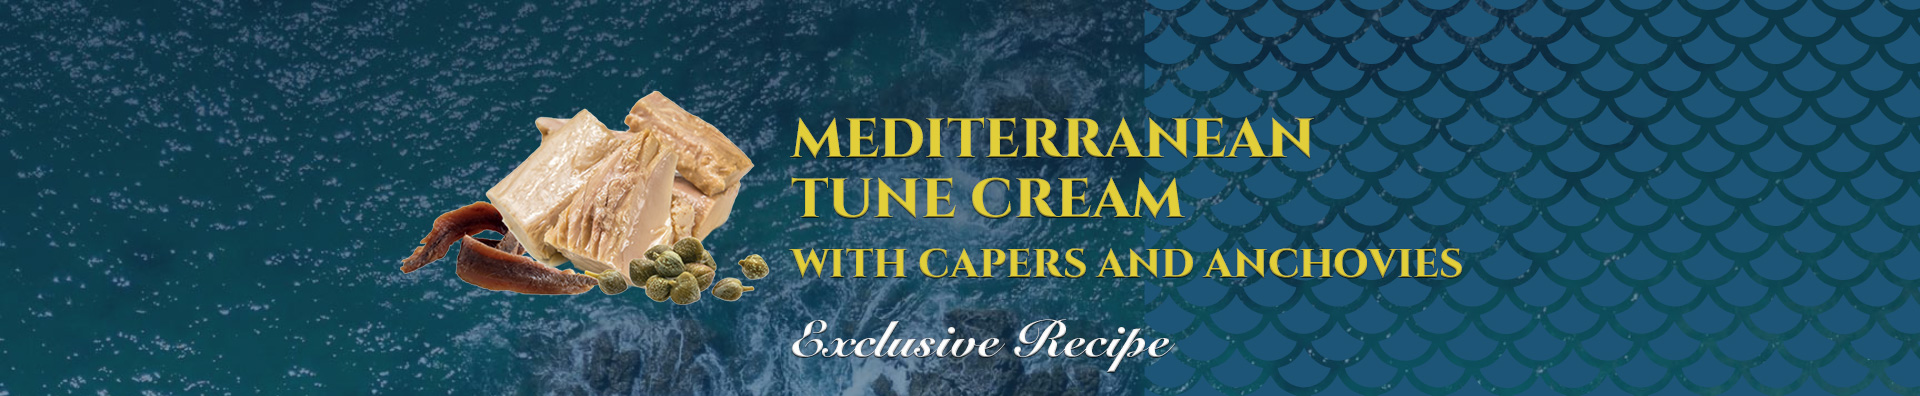 Crema di tonno alla mediterranea background